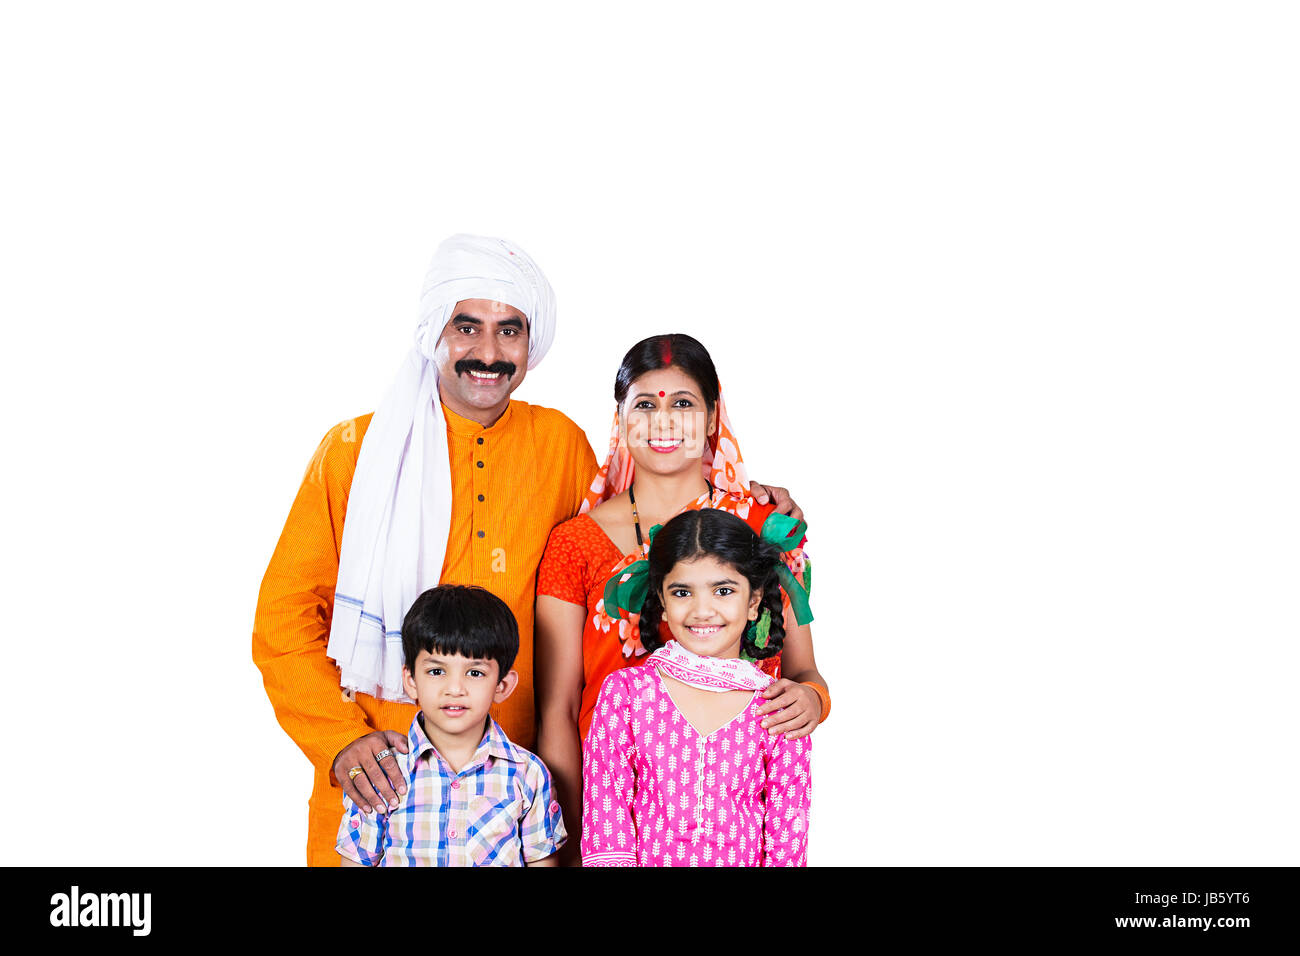 Indische Farme Familie - 4 Personen Eltern und Kinder gemeinsam im Studio shot auf weißem Hintergrund Stockfoto